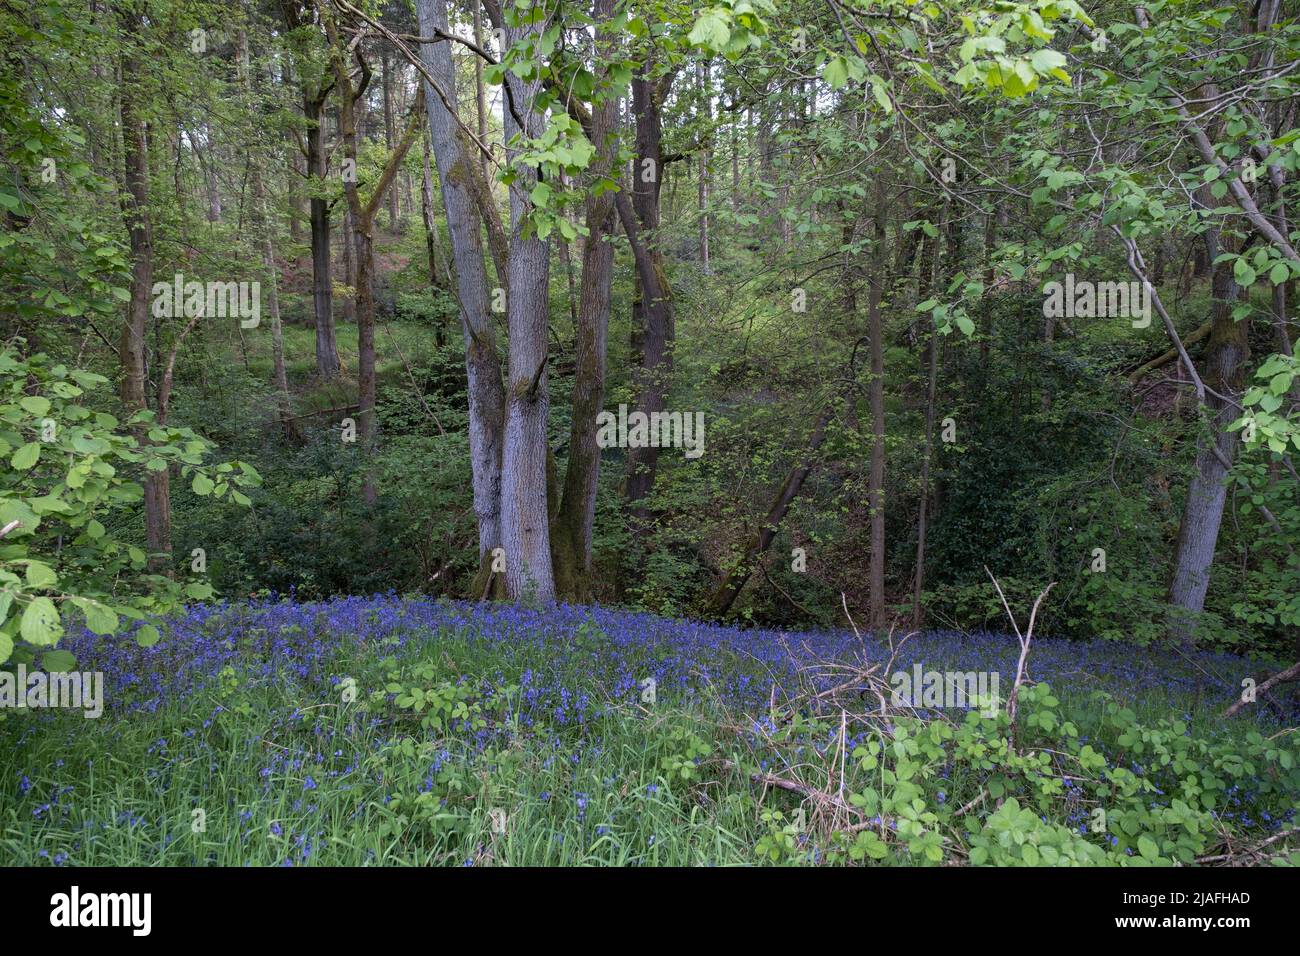 Bluebells en bosques de primavera el 14th de mayo de 2022 en Upper Arley, Reino Unido. Los bluebells o H. non-scripta se asocian particularmente con bosques antiguos donde puede dominar el suelo del bosque para producir alfombras de flores violeta-azules en bosques de bluebell, pero también ocurre en hábitats más abiertos en regiones occidentales. Está protegido por la legislación del Reino Unido. Bannams Wood es un pequeño pedazo de bosque antiguo, parte del Wildwood original que cubría el Reino Unido hace muchos miles de años. British wildwood, o simplemente The wildwood, es el paisaje totalmente natural que se desarrolló en las principales partes de Inglaterra af Foto de stock